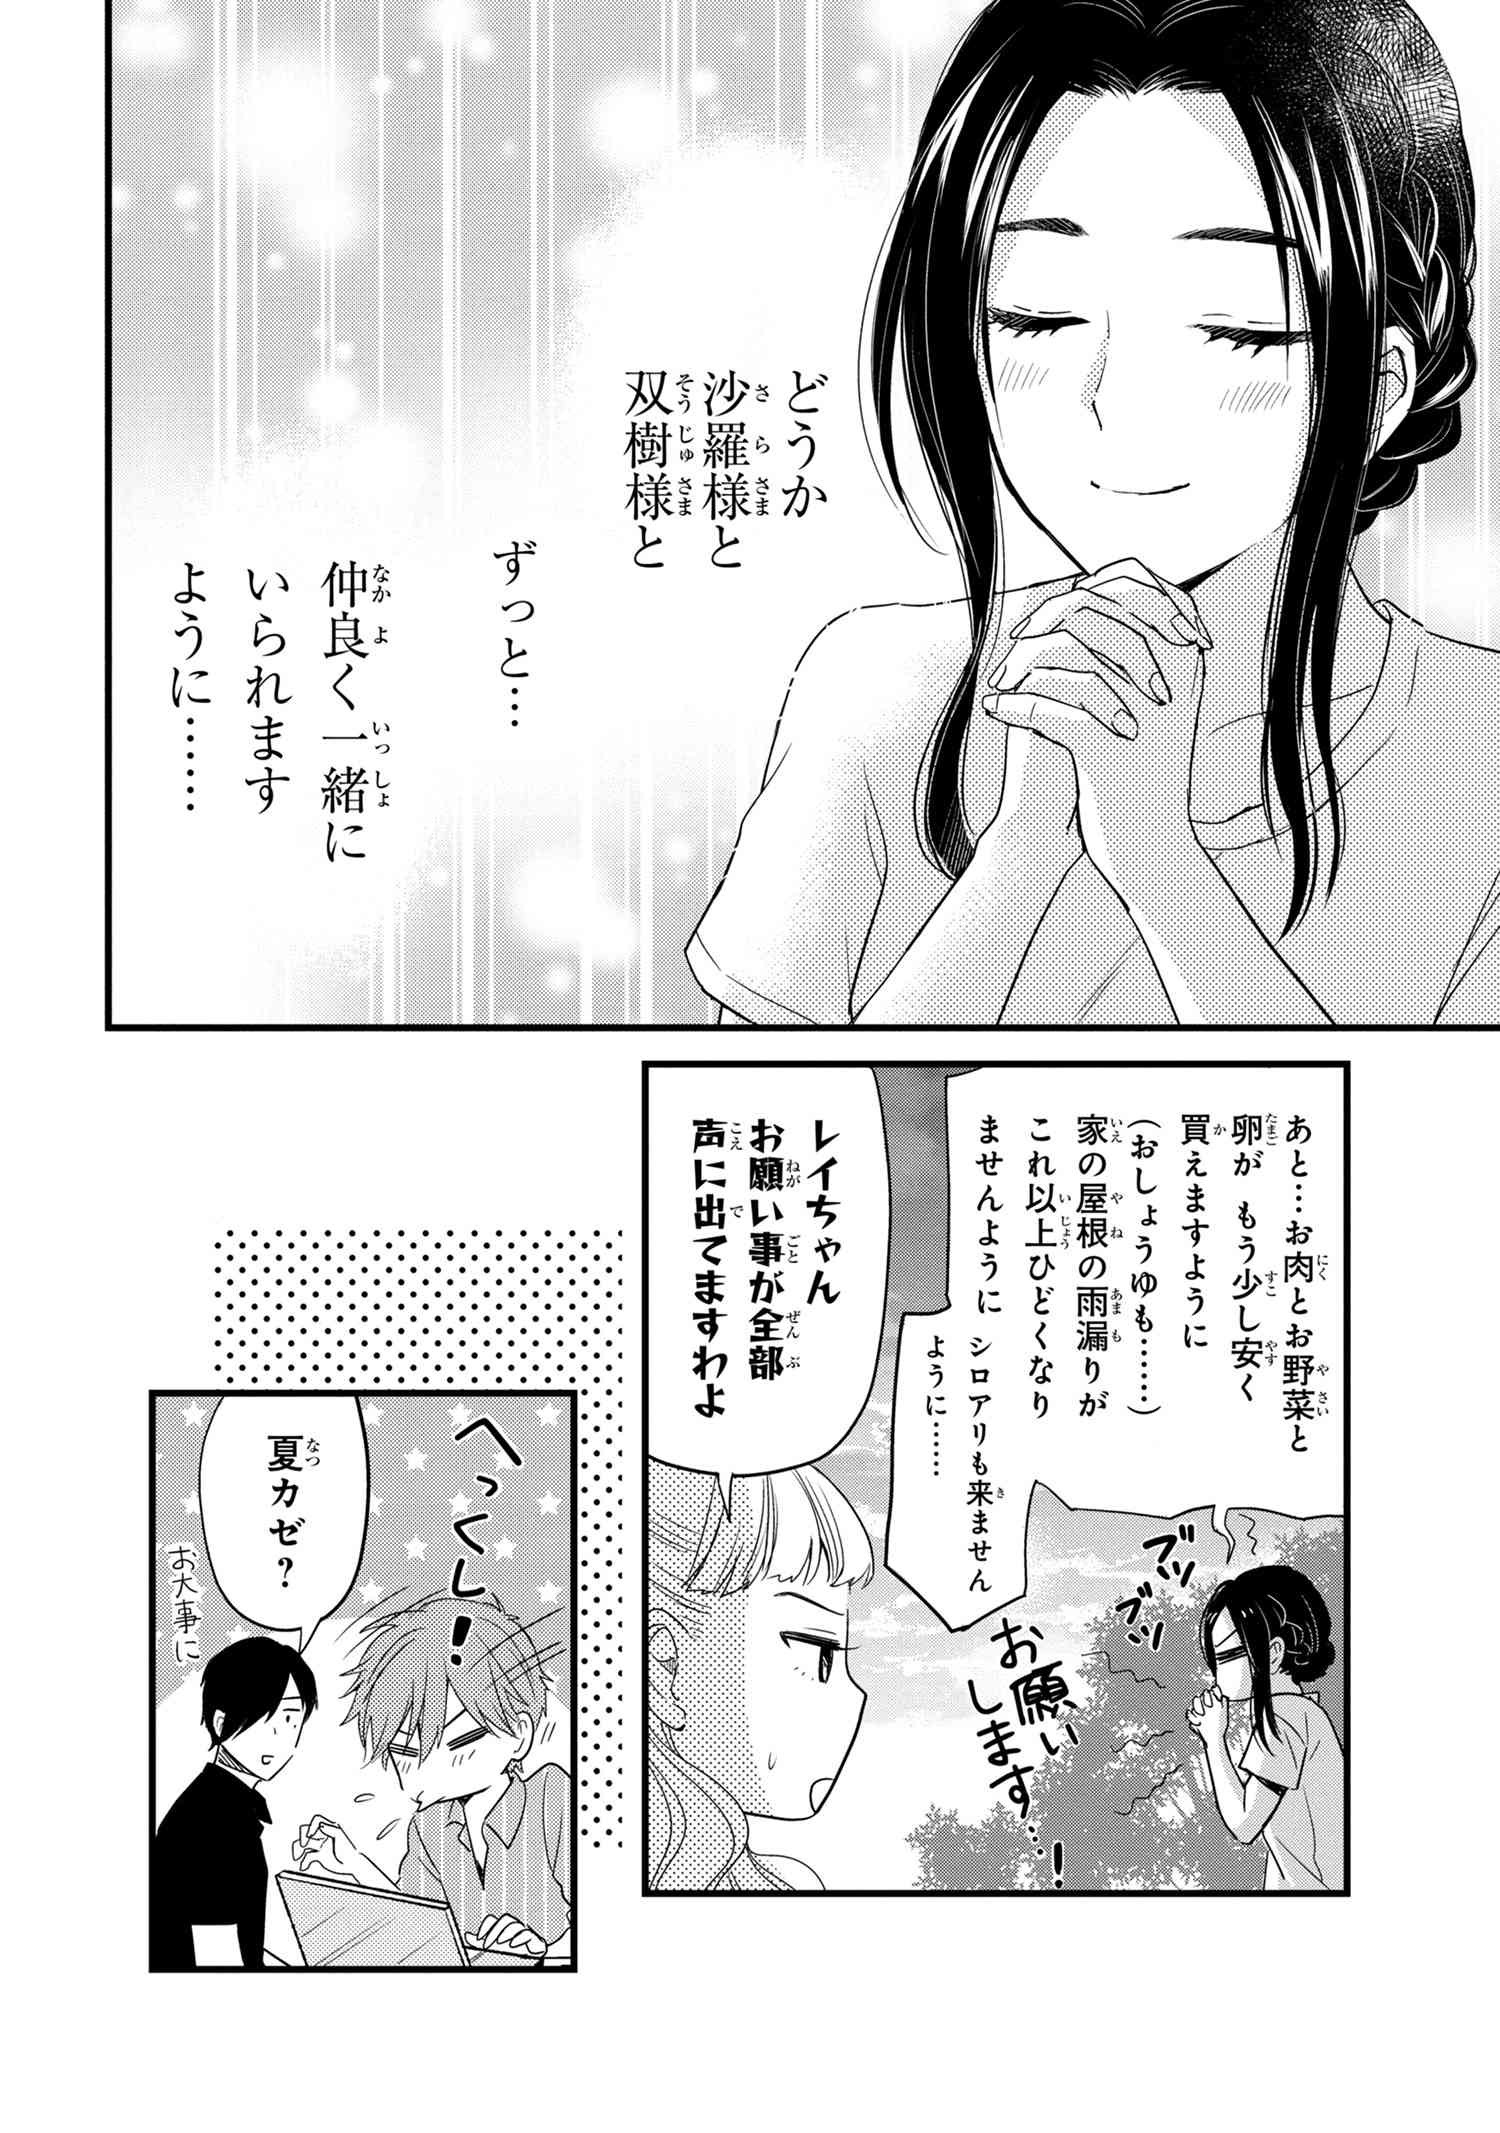 Reiko no Fuugi Akuyaku Reijou to Yobarete imasu ga, tada no Binbou Musume desu - Chapter 12.7 - Page 3